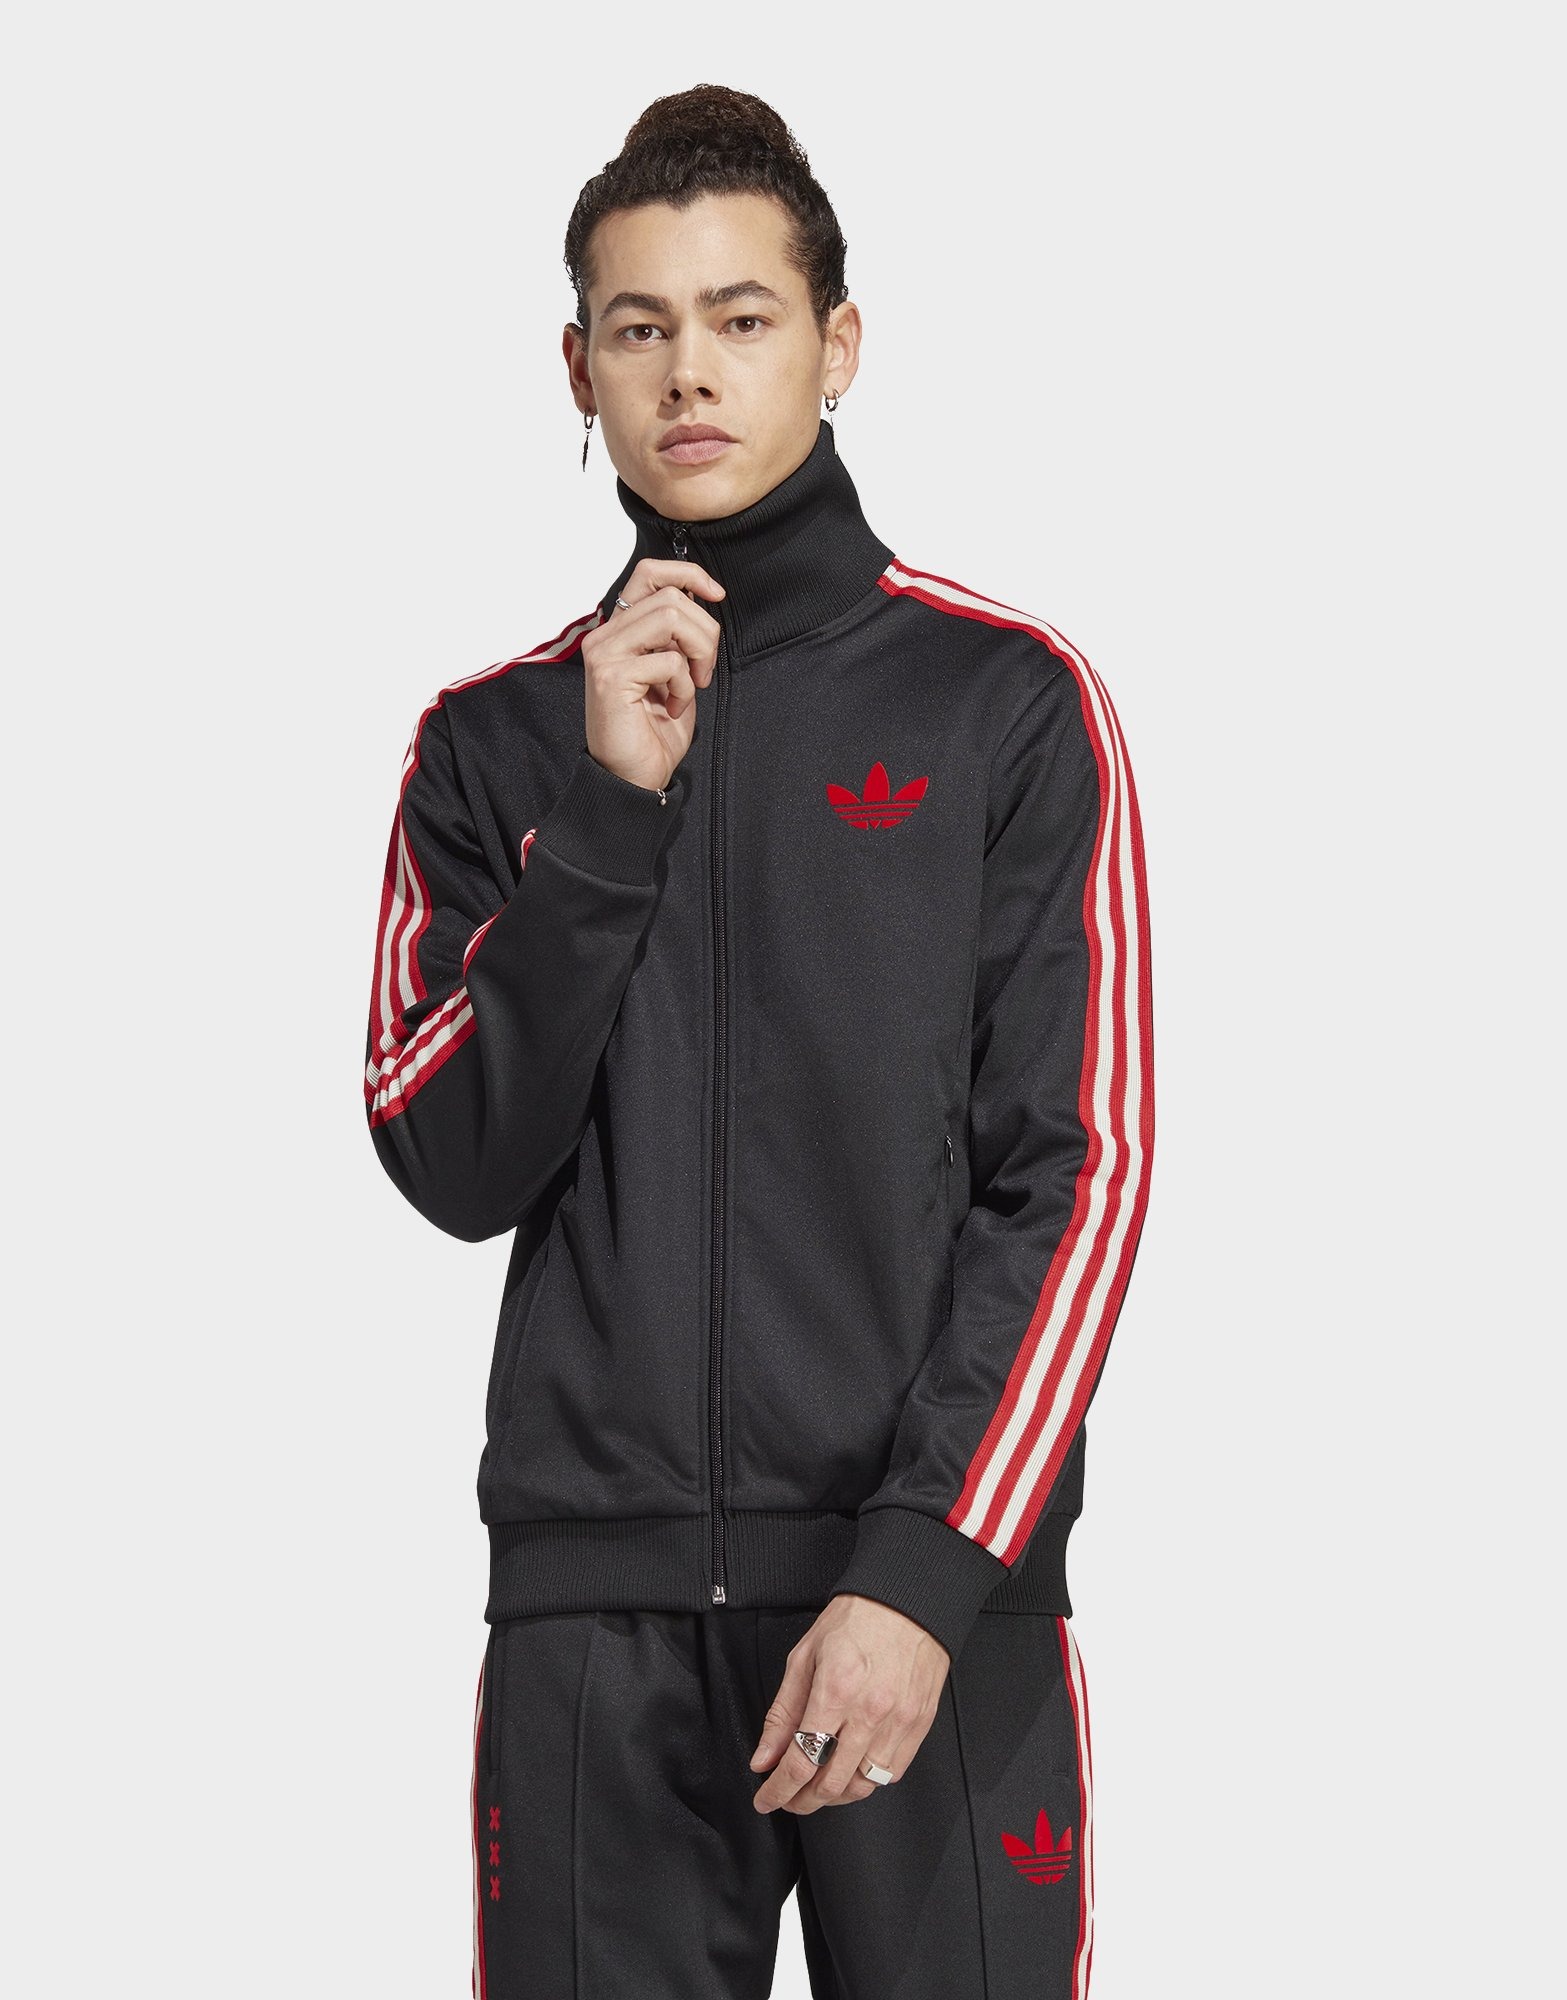 Adidas New York Red Bulls Soccer Club Track Jacket Mens Medium Black Mock  Neck